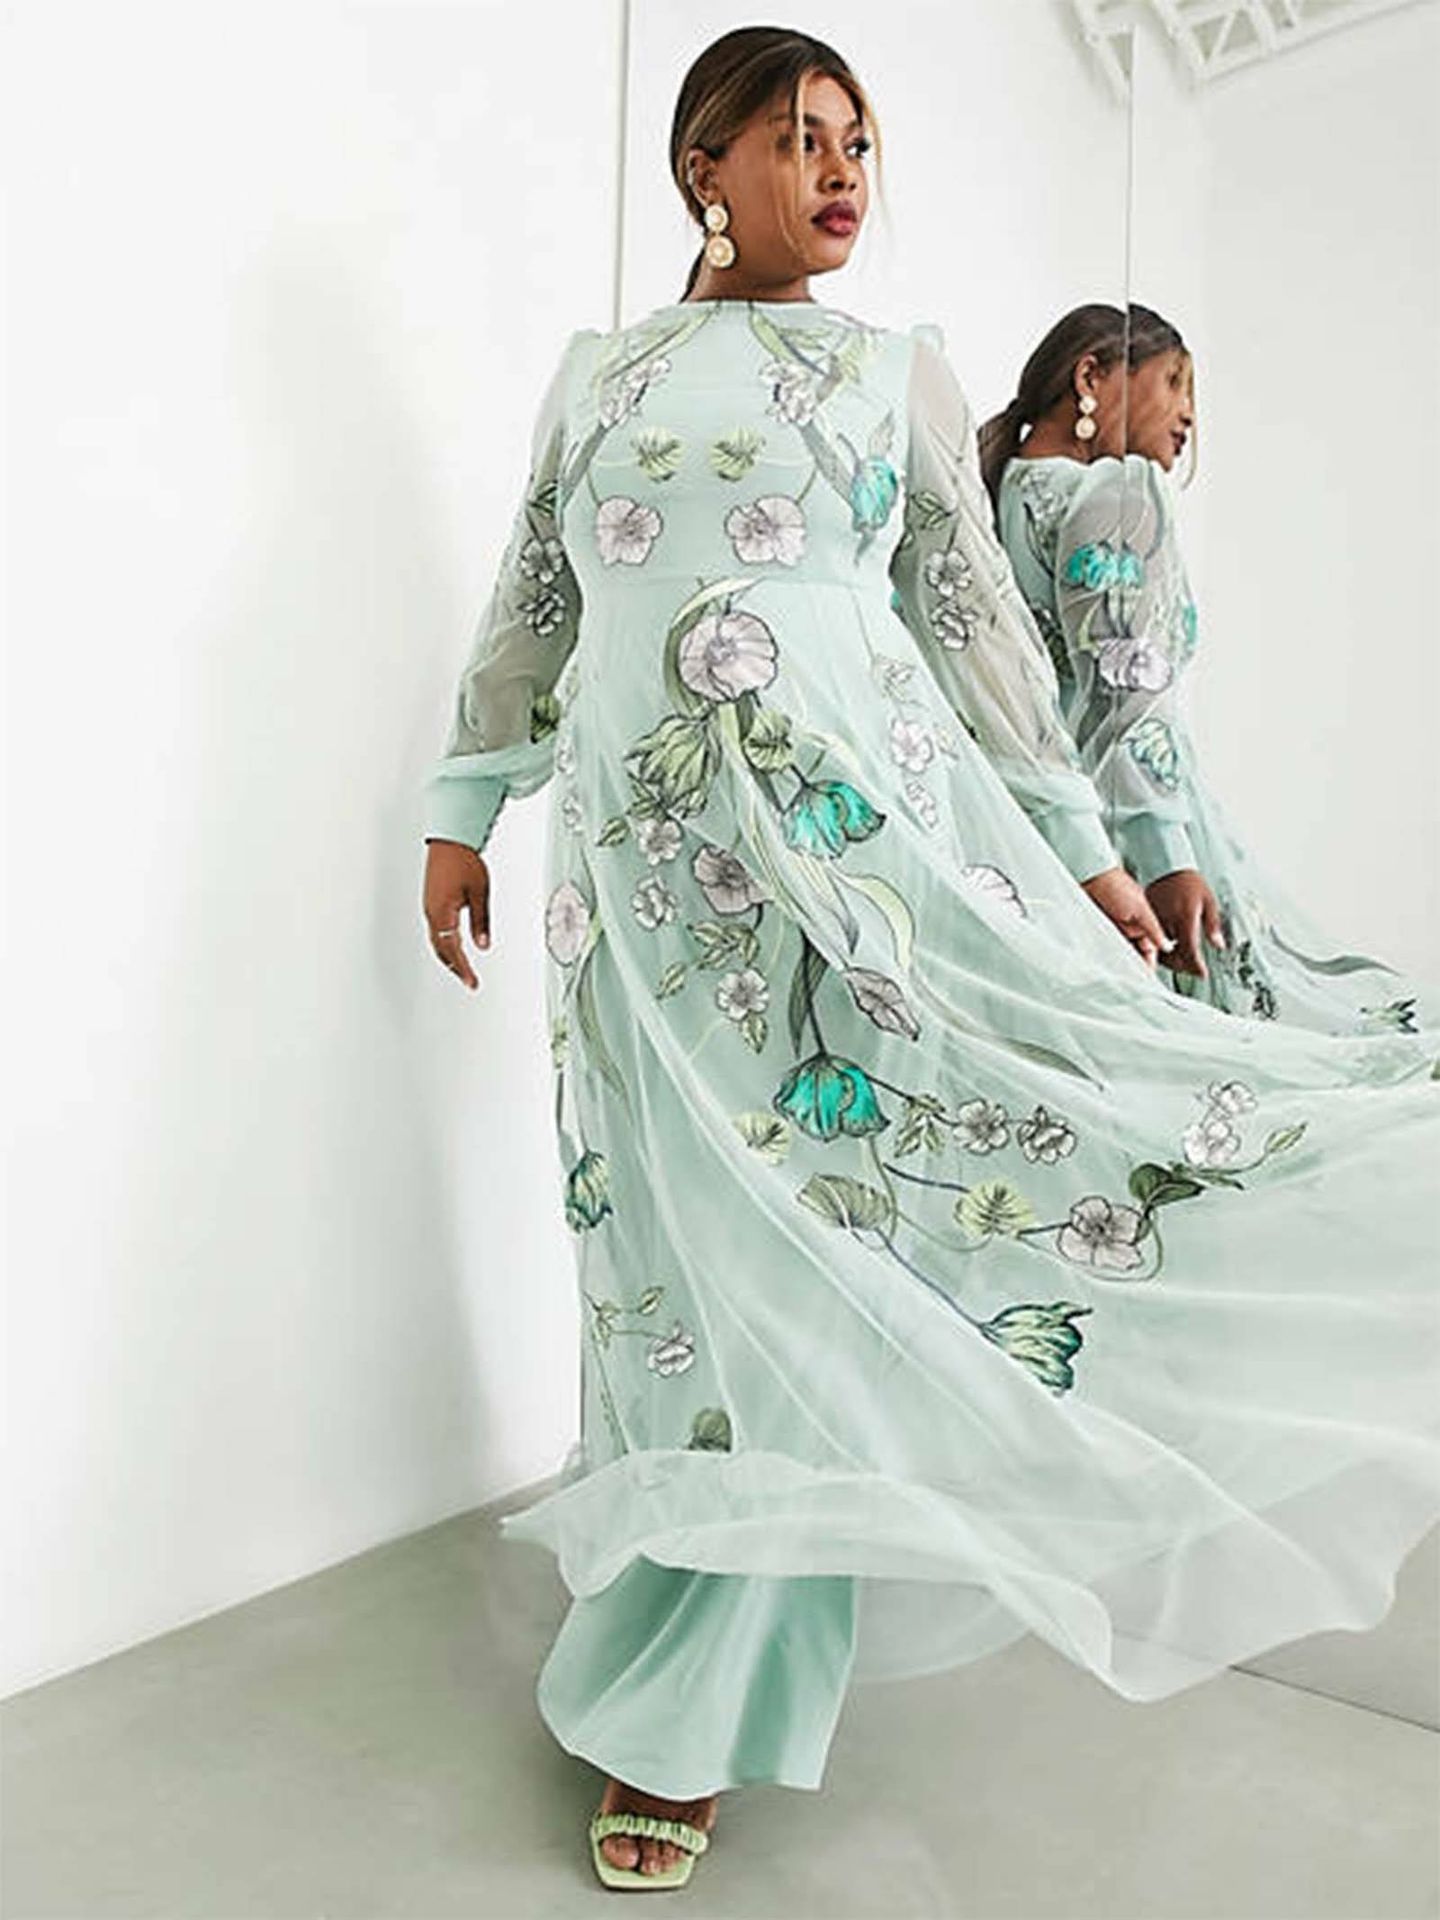 El espectacular vestido de invitada inspirado en el art nouveau de Asos. (Cortesía)